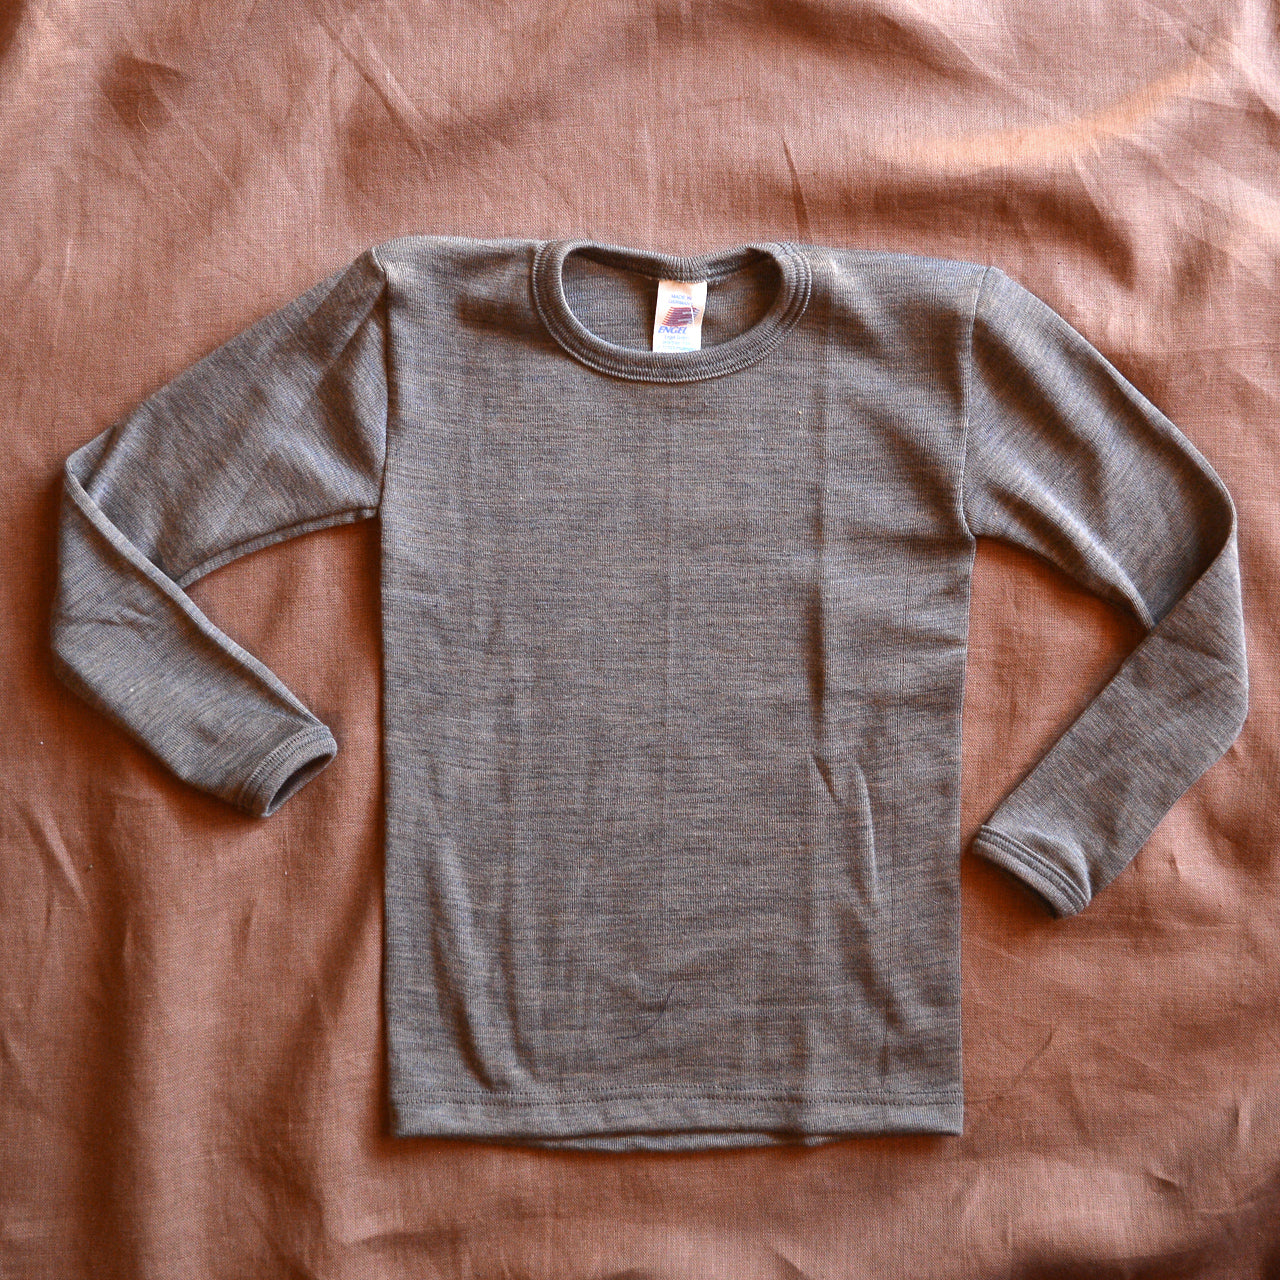 Engel - Kids Sleeveless Thermal Shirt: Base Layer or Pajama Top, Organic  Merino Wool Silk